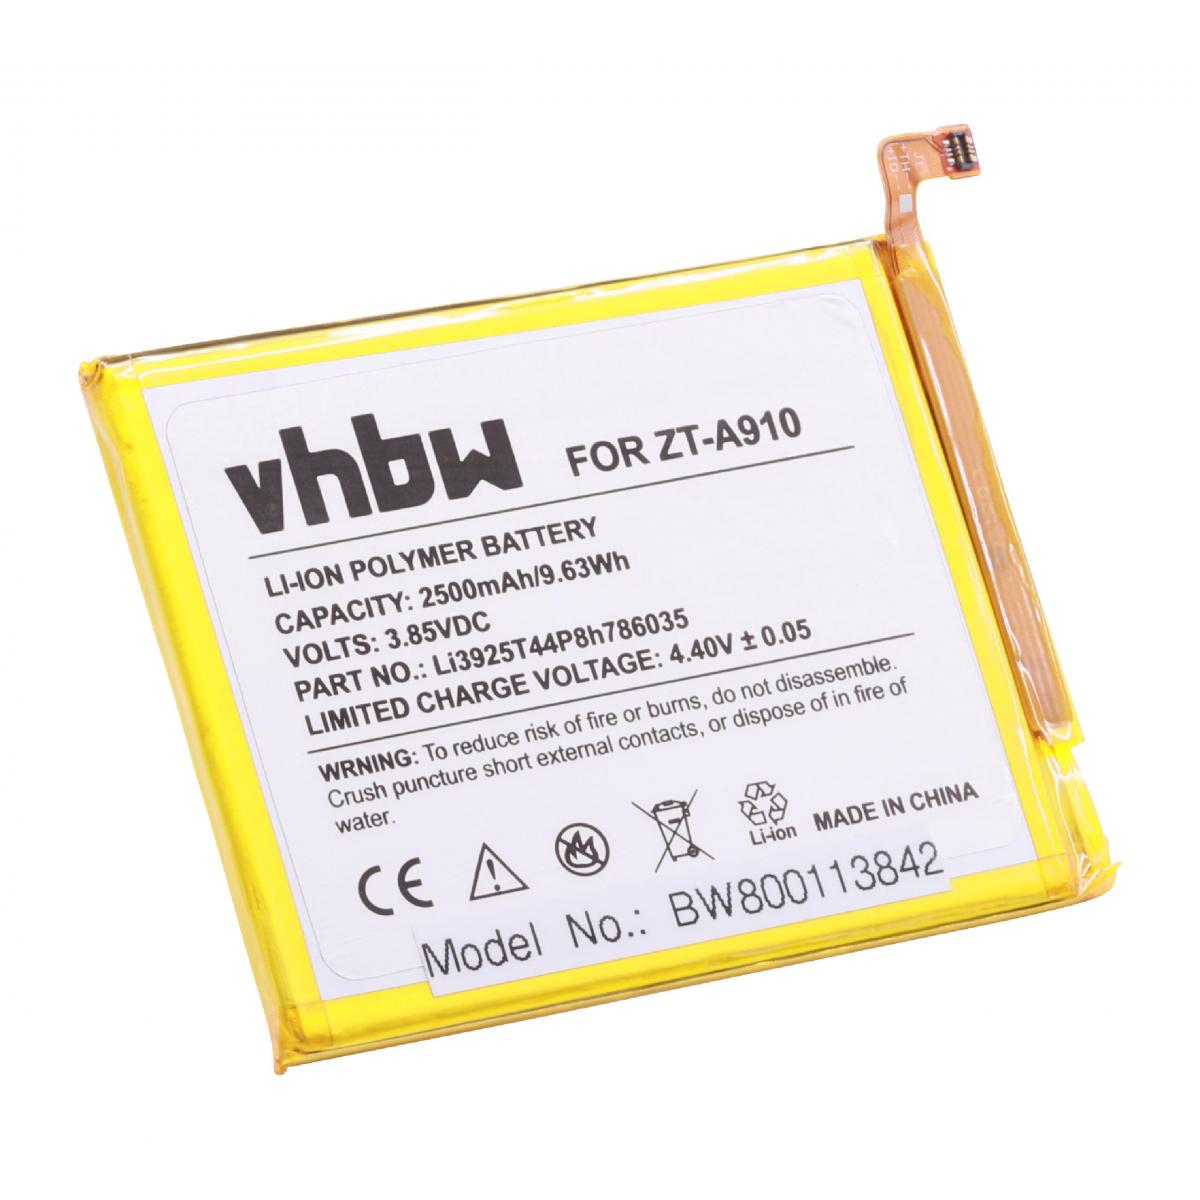 Vhbw - vhbw batterie remplace ZTE Li3925T44P8h786035 pour smartphone (2500mAh, 3,85V, Li-polymère) - Batterie téléphone